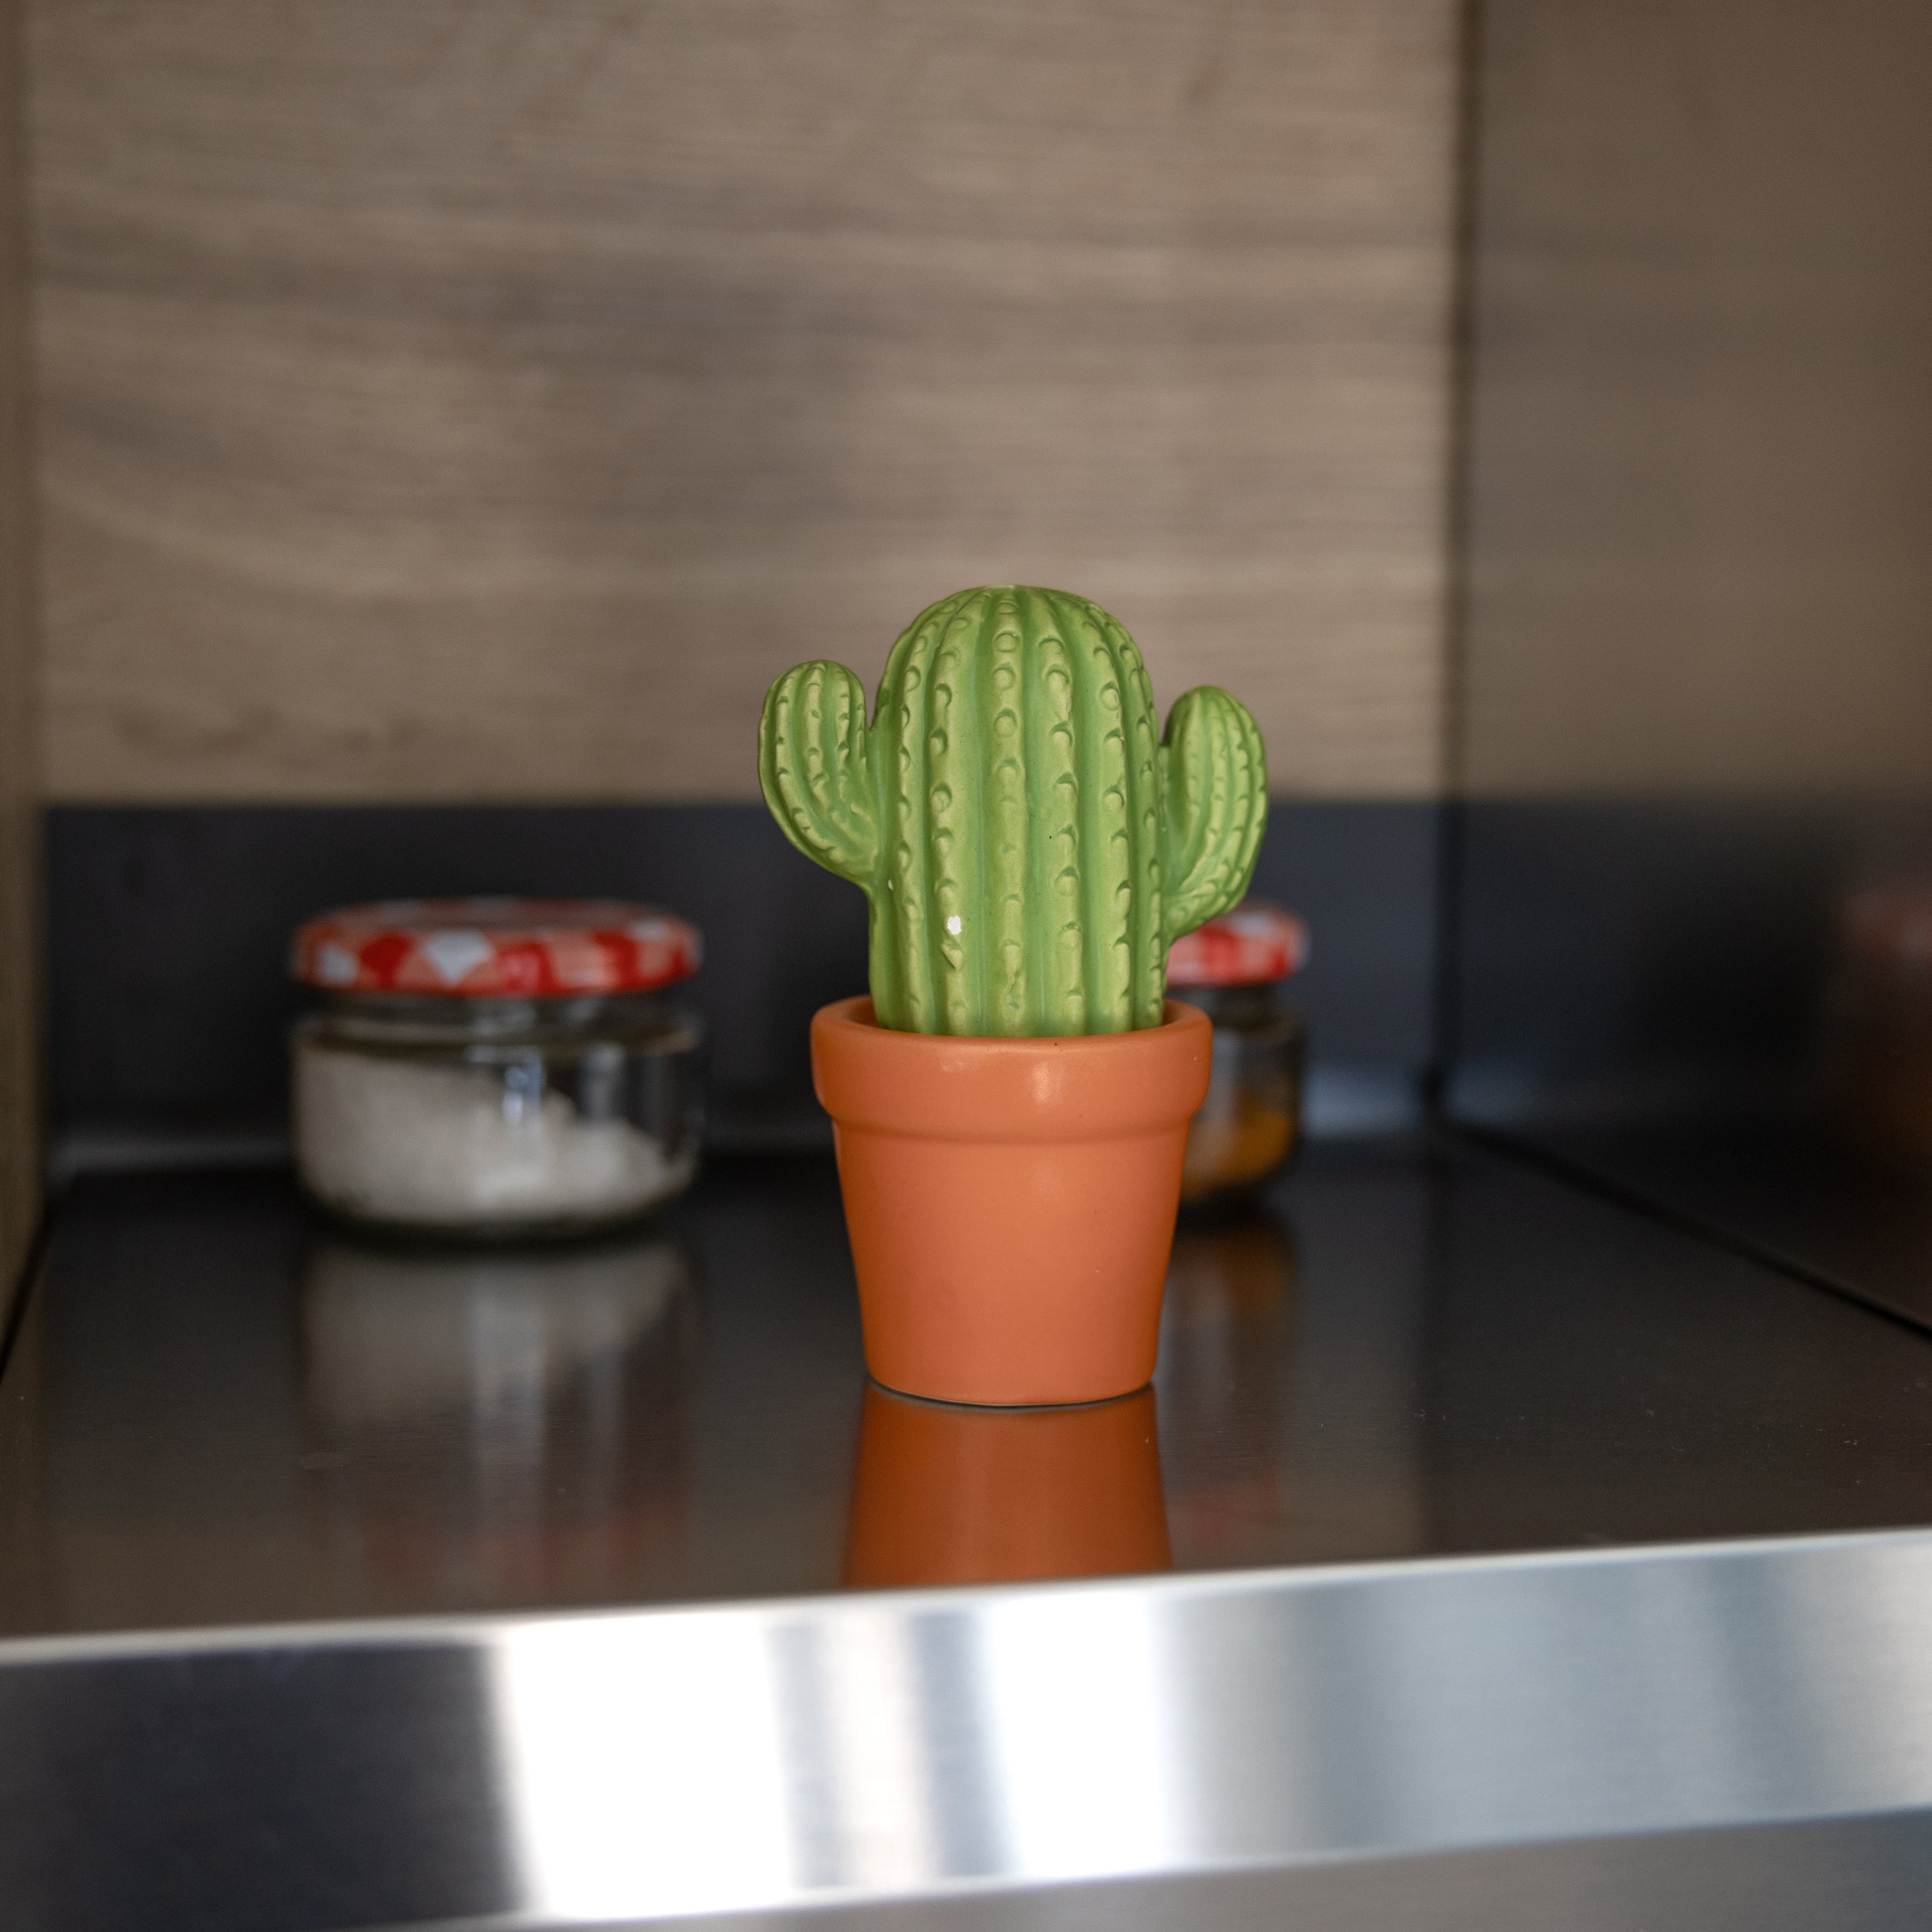 Salero y pimentero “cactus”